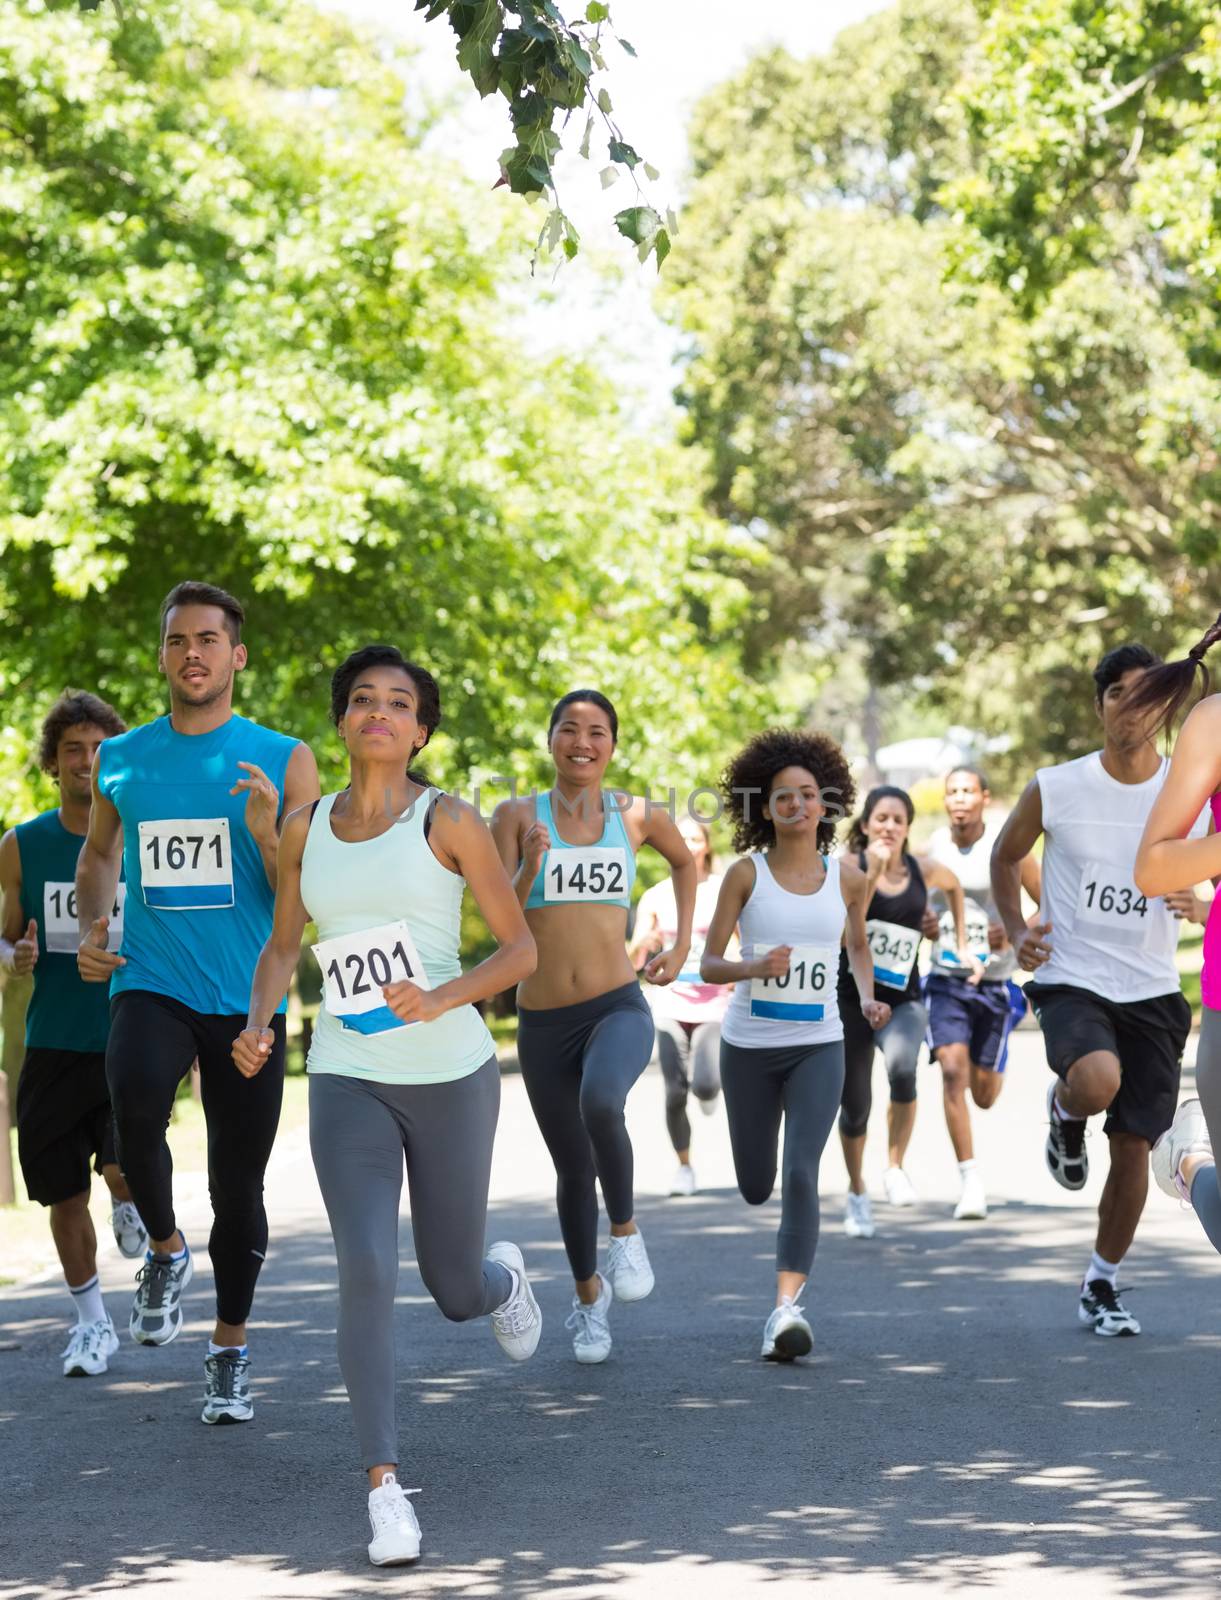 Group of marathon athletes running on street